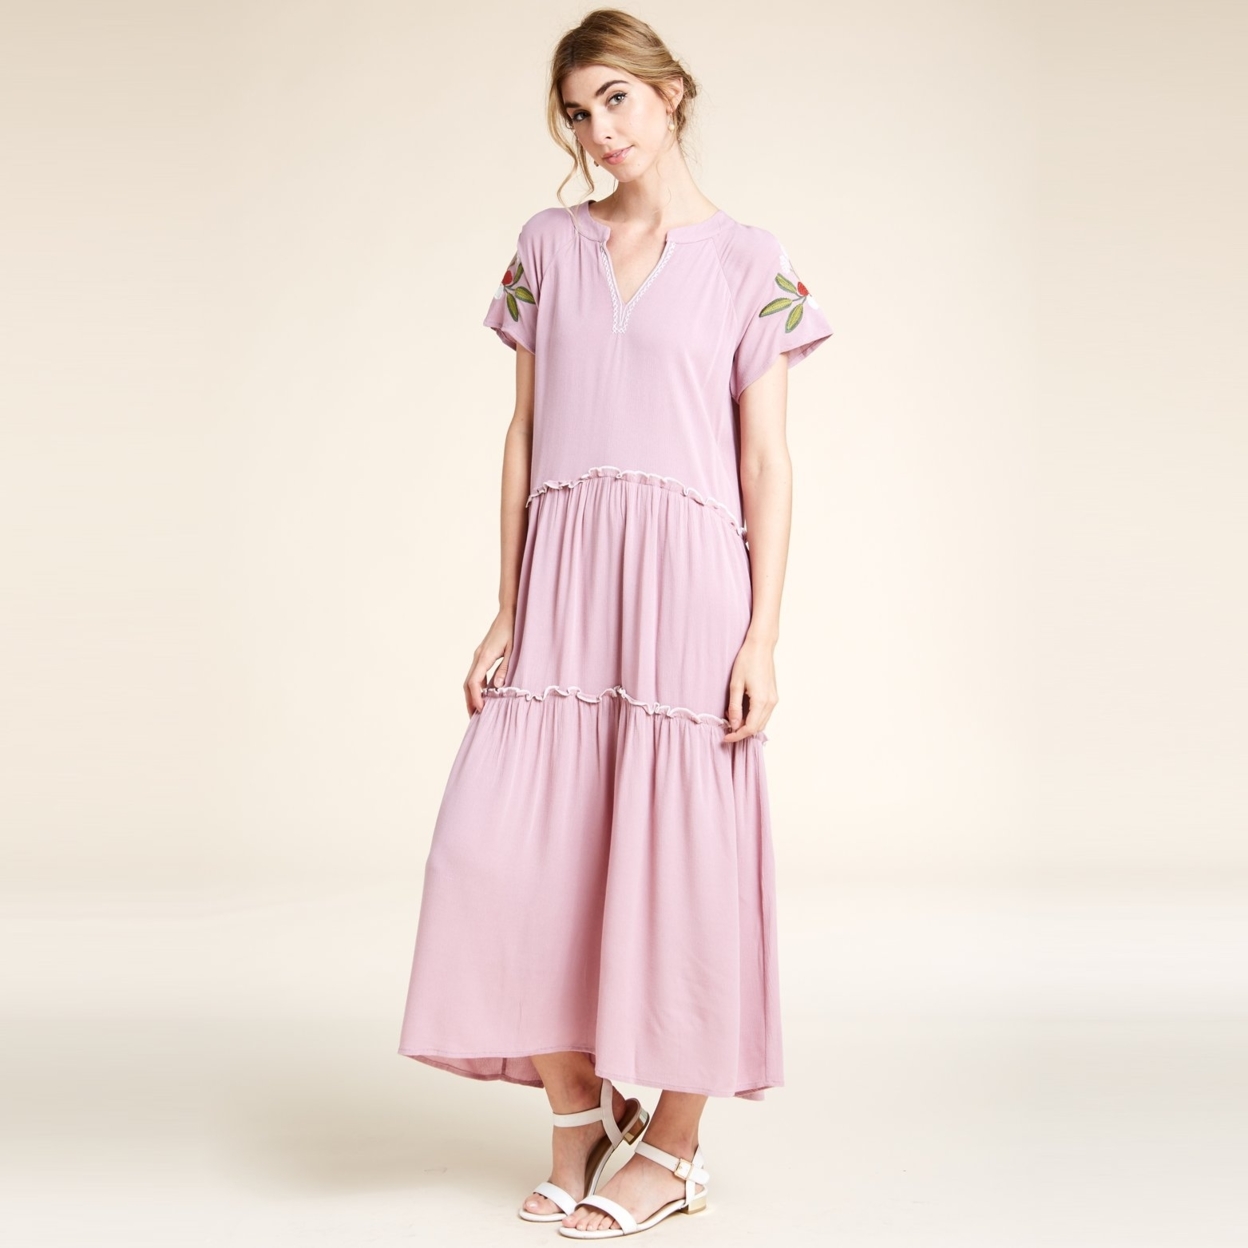 Embroidery Weekend Getaway Dress - Pink, Large (12-14)